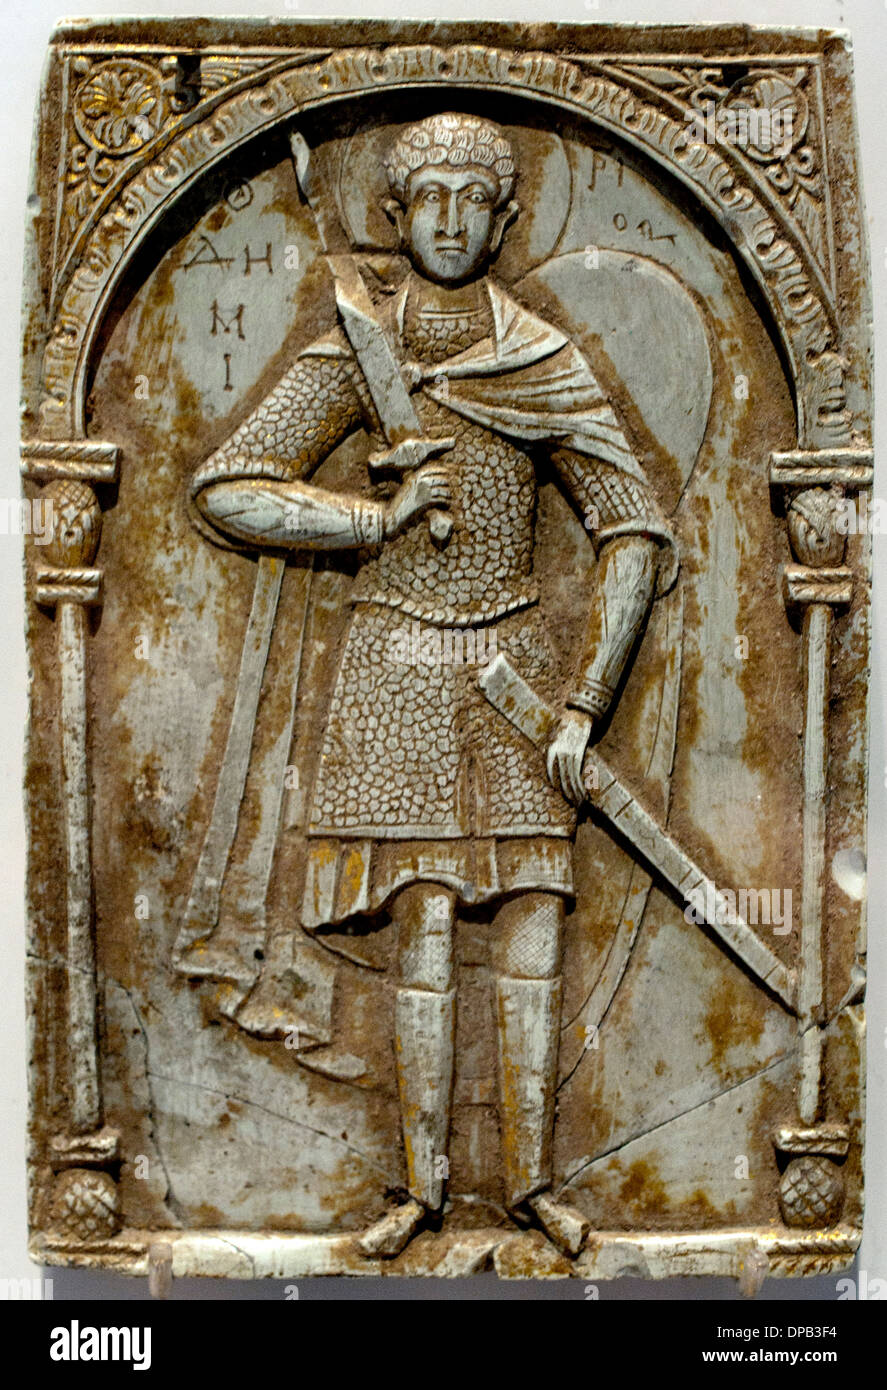 Icône- lcône Saint-dimitri Constantinople Turquie ) pierre 1000-1050 Banque D'Images